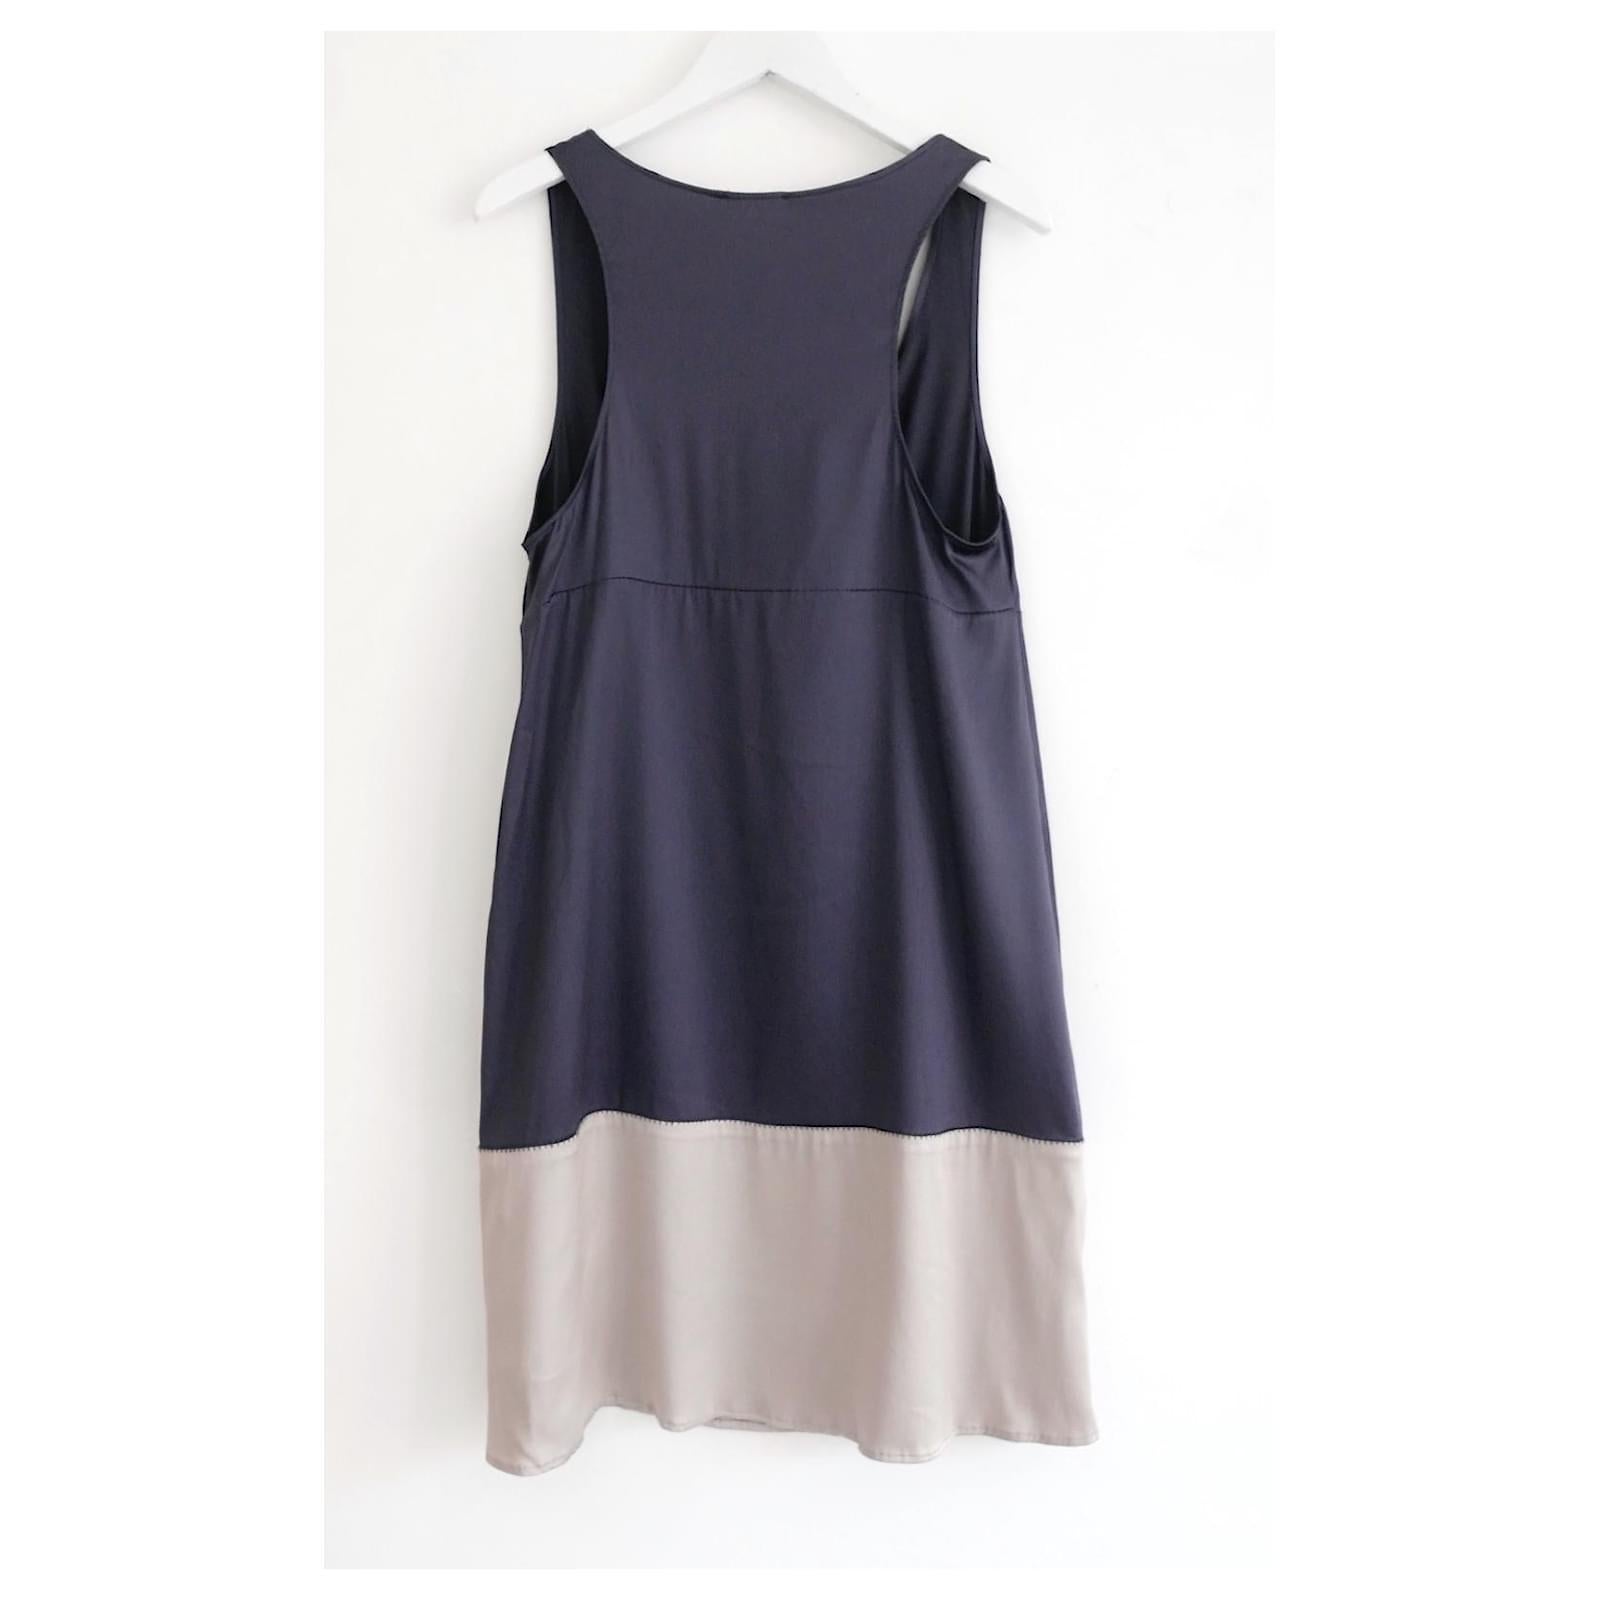 Magnifique robe vintage Marni - printemps 2006, portée une fois. Réalisée en soie bleu/gris et beige ultra douce, elle présente une coupe souple et aplatie et un dos échancré. Taille 1. Mesures approximatives - buste 32